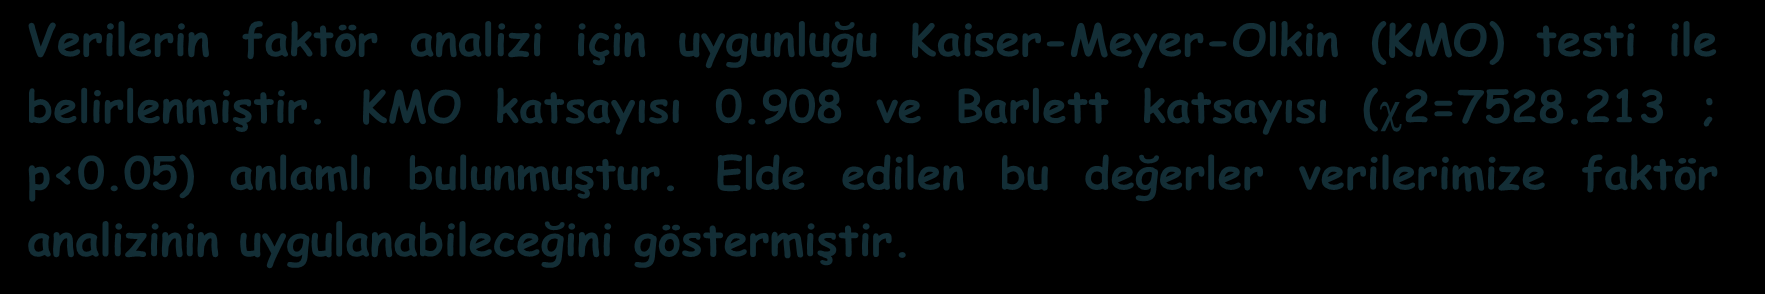 Verilerin faktör analizi için uygunluğu Kaiser-Meyer-Olkin (KMO) testi ile belirlenmiştir. KMO katsayısı 0.908 ve Barlett katsayısı ( 2=7528.